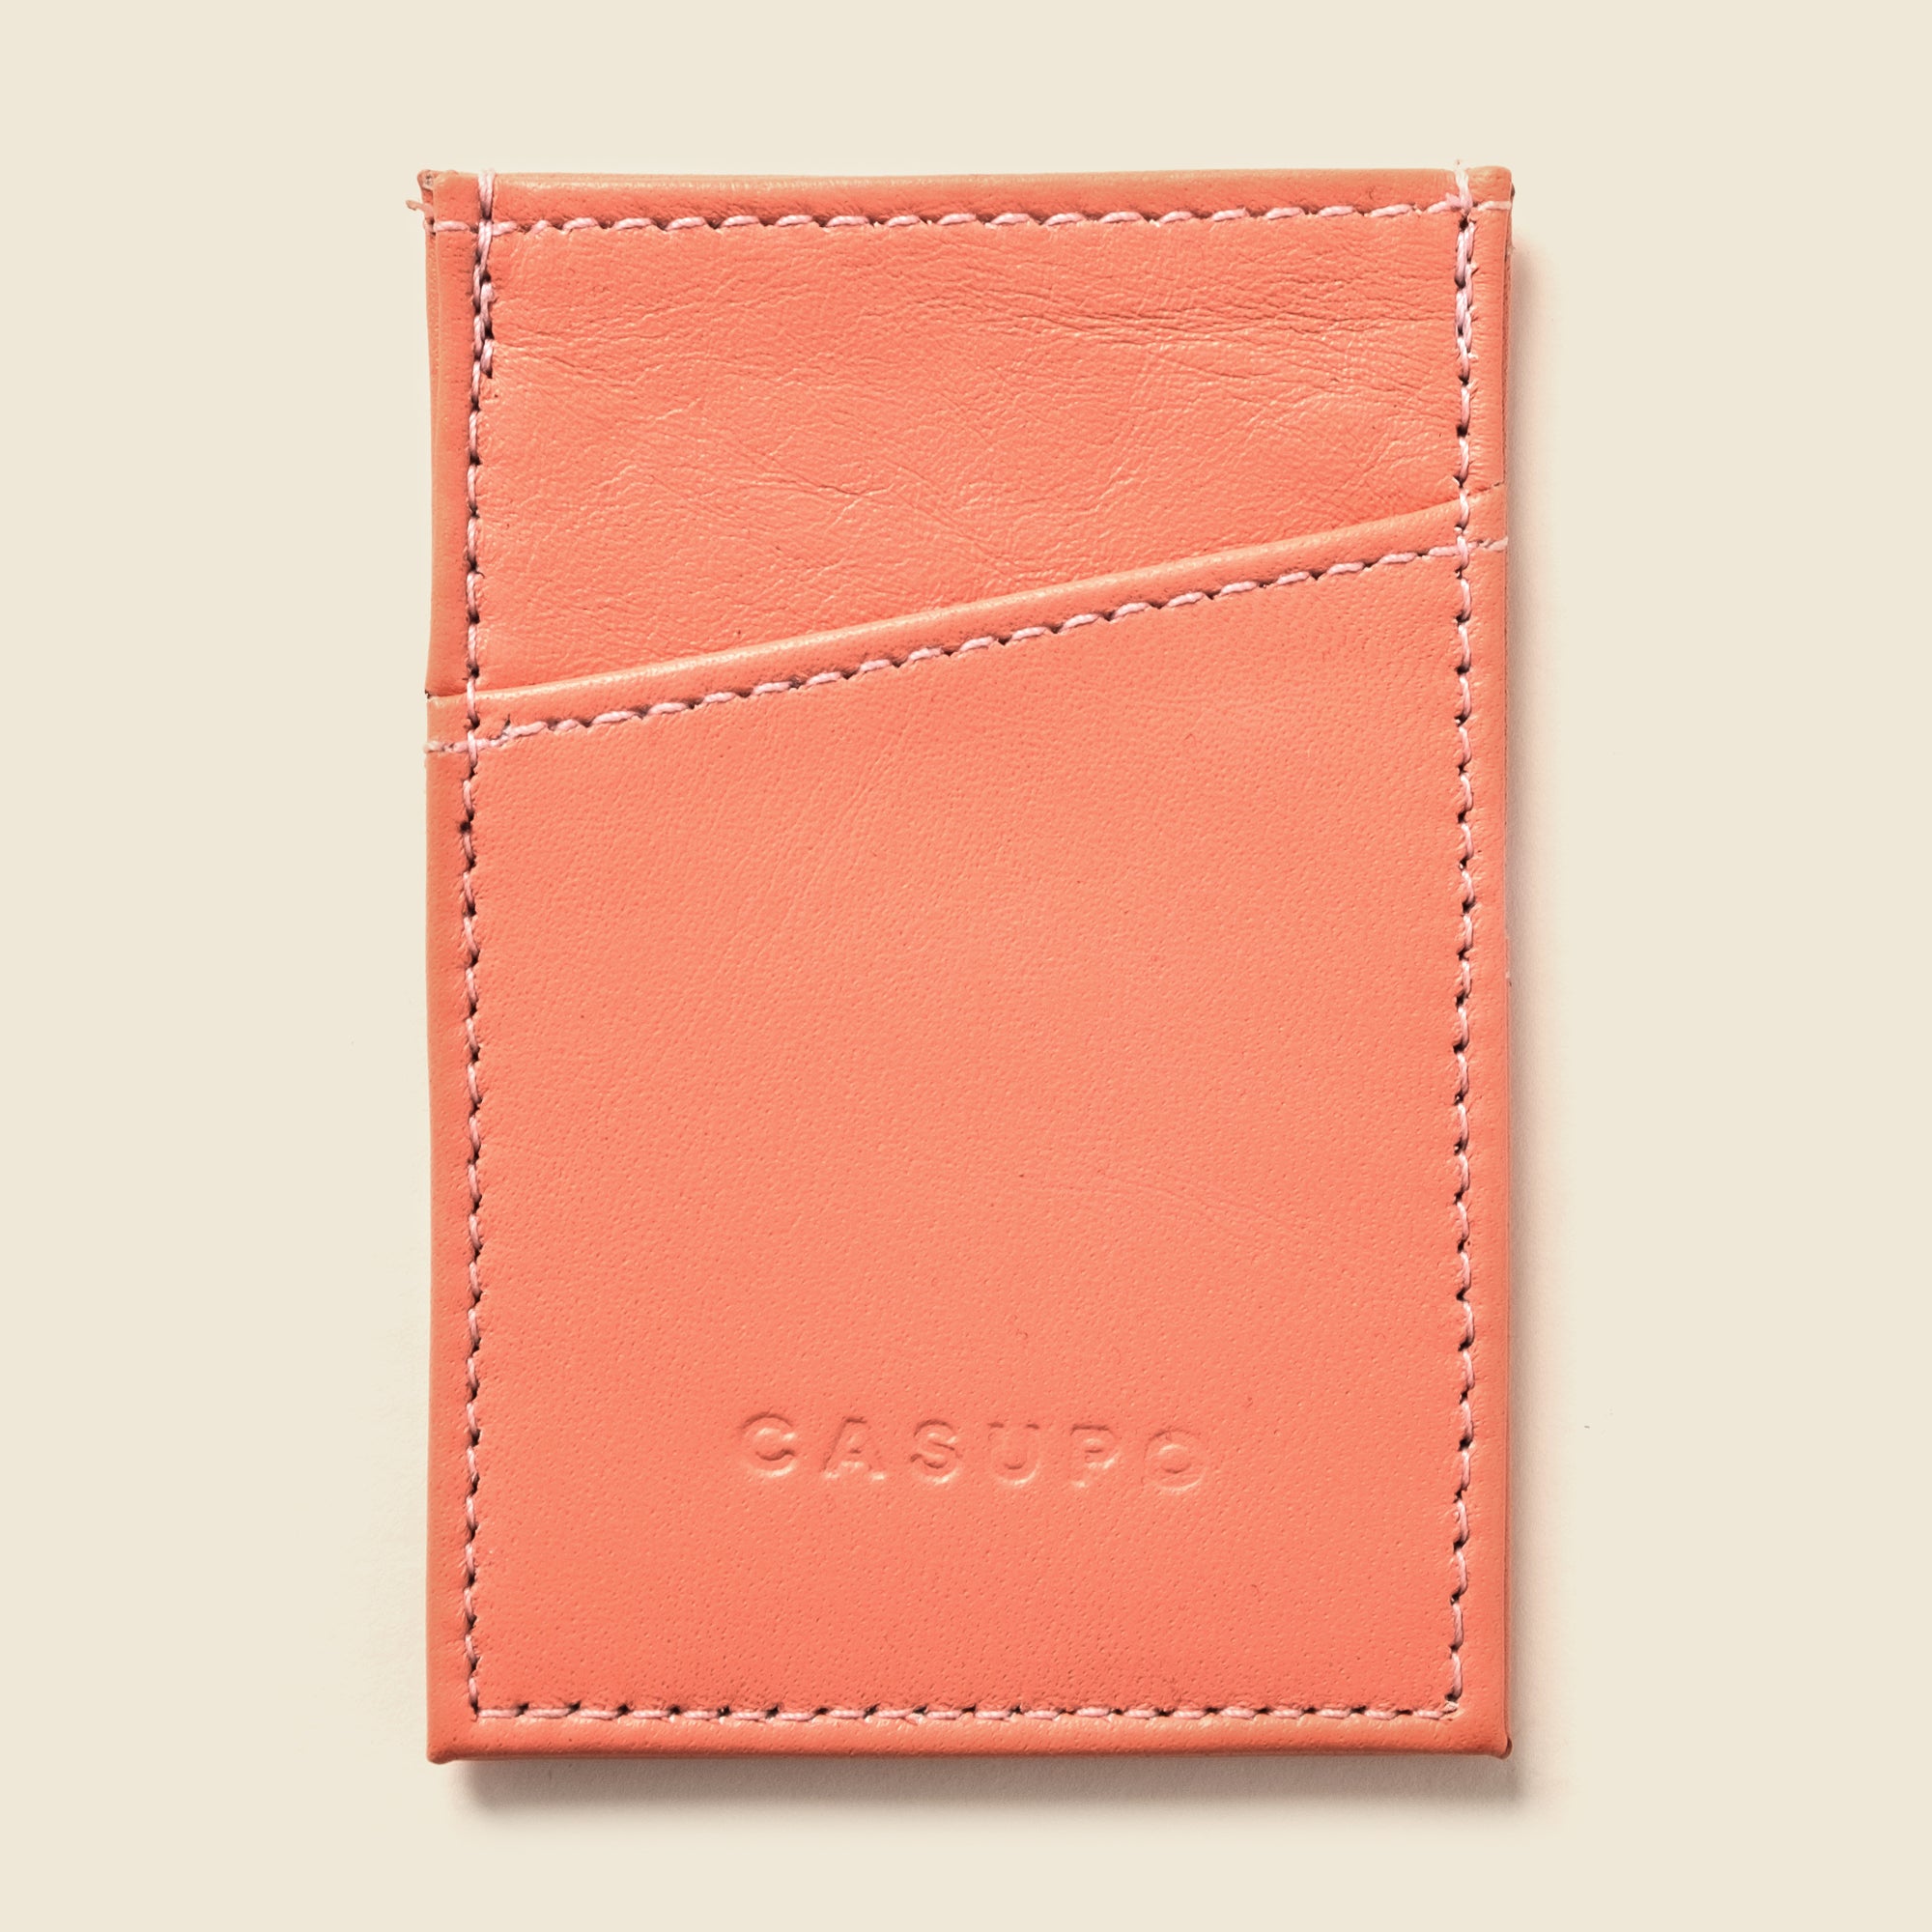 Pastel pink leather minimalist cardholder wallet for cards for men